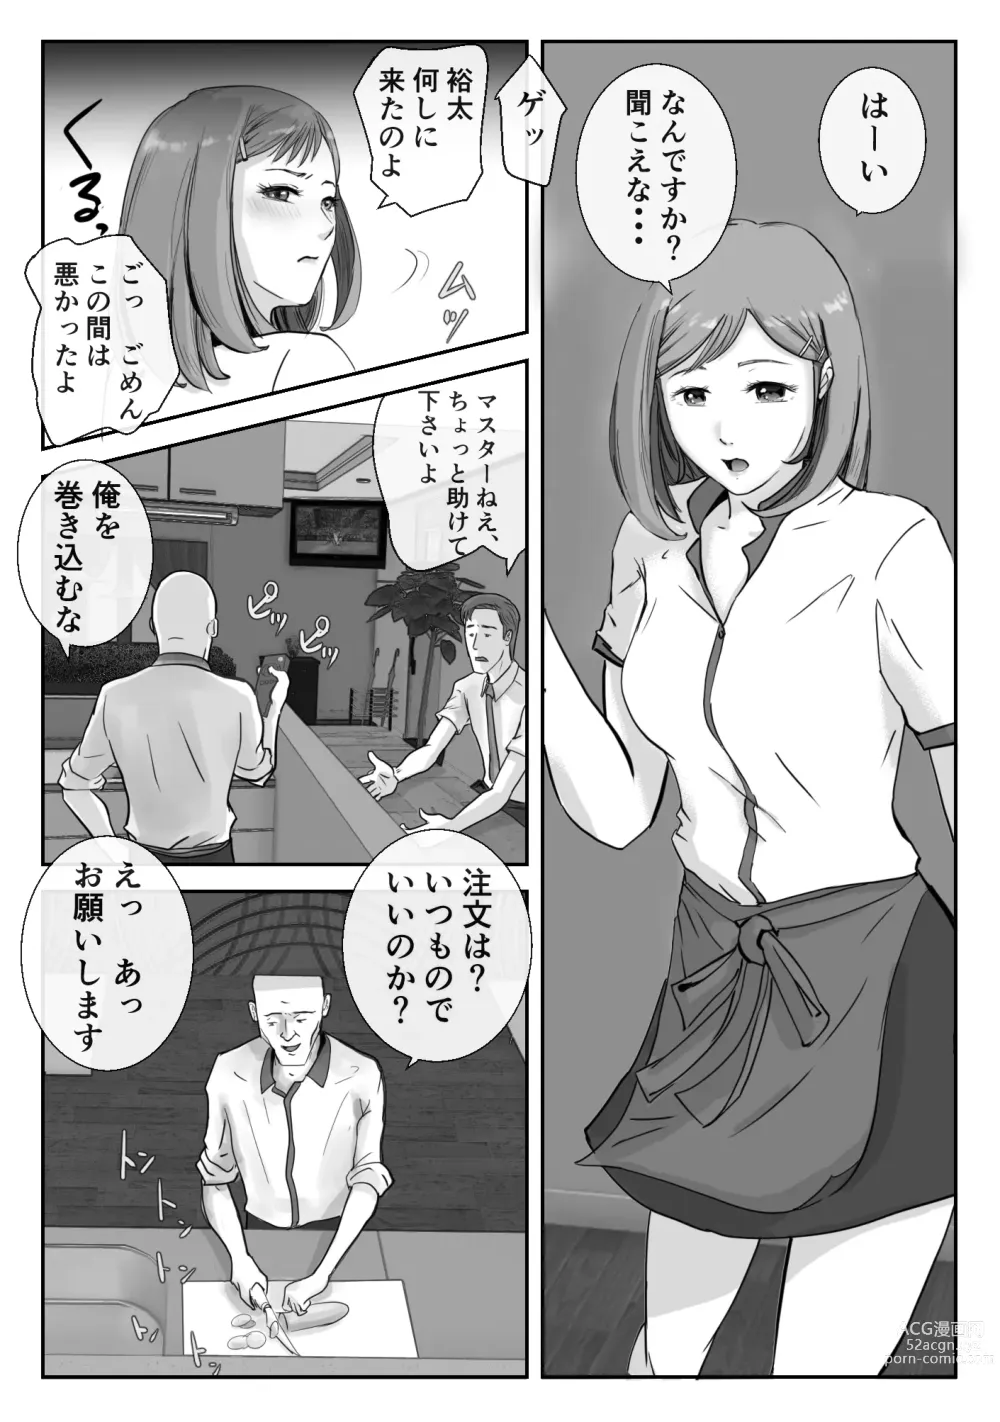 Page 5 of doujinshi Ano Hi no Uso 3